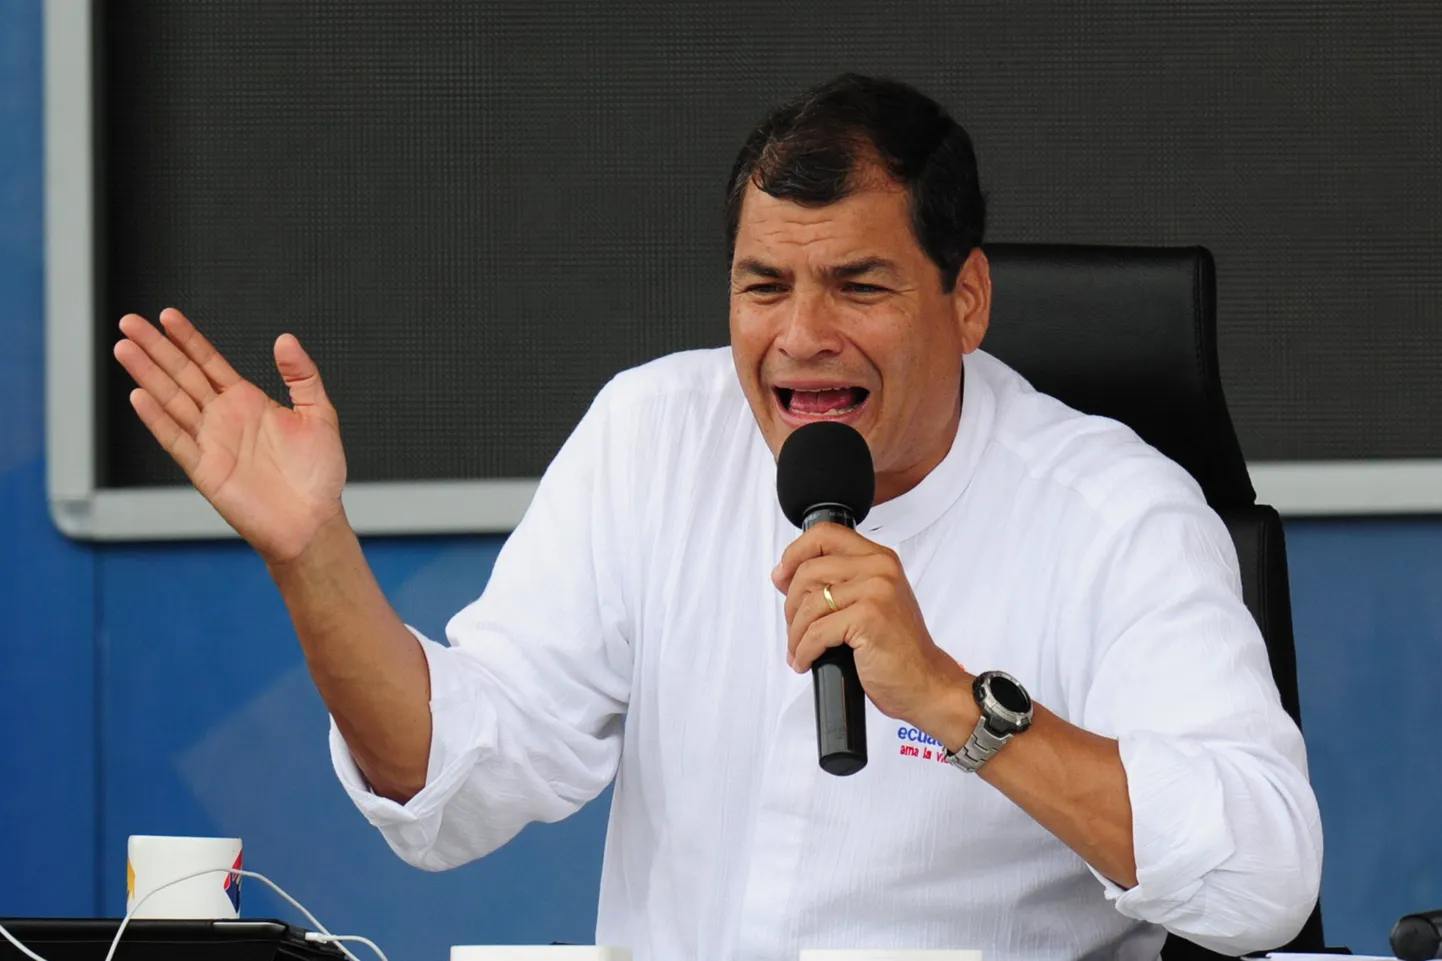 Ecuadori president Rafael Correa